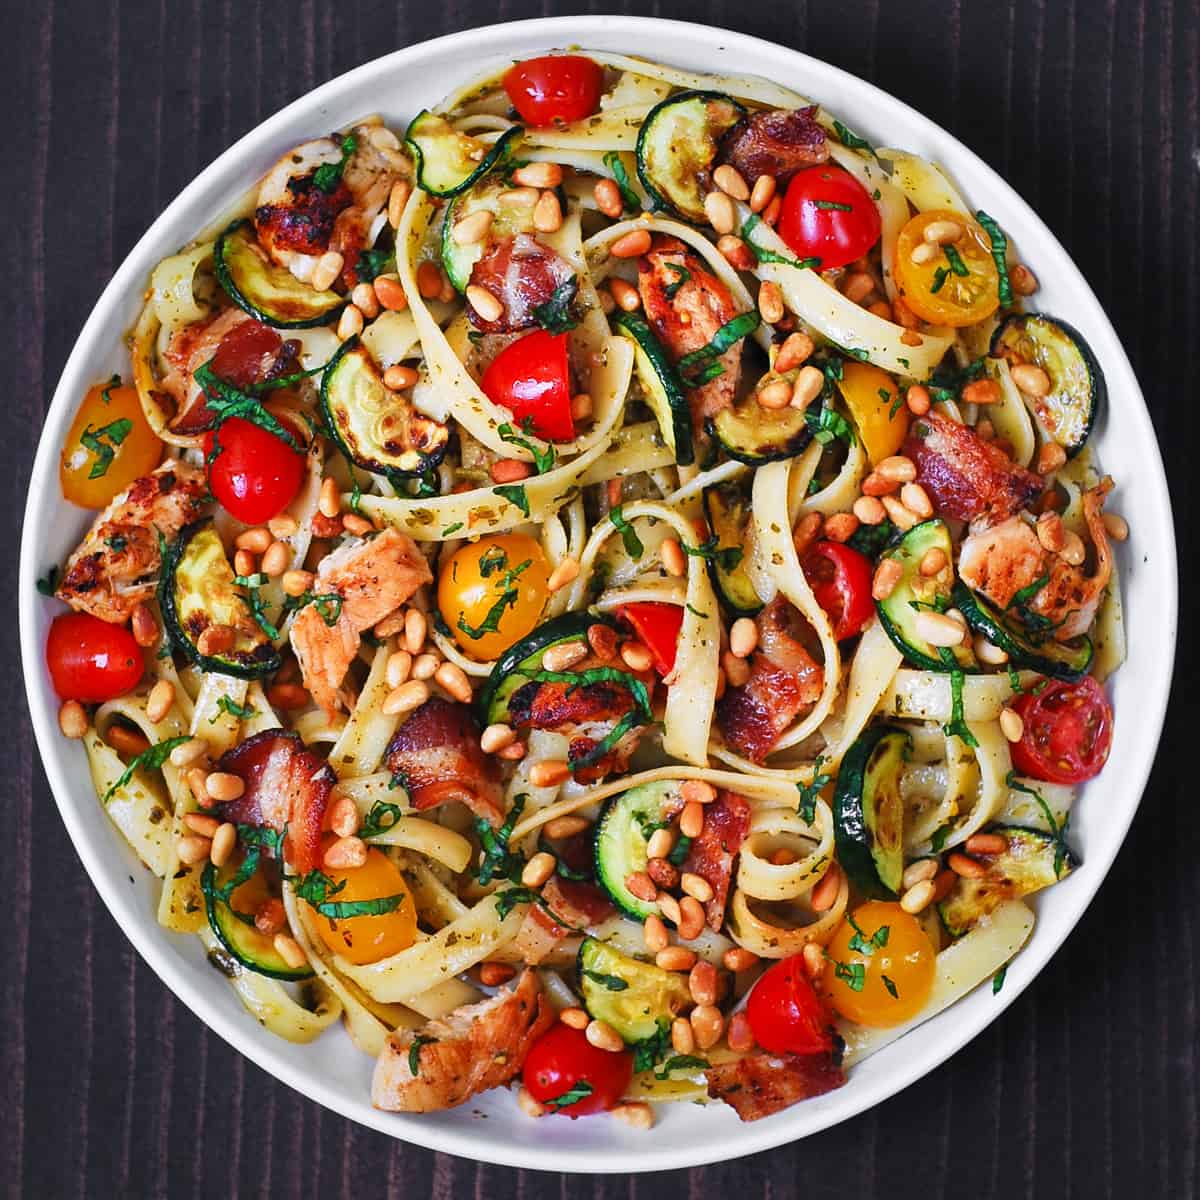 zucchini “pasta” with chicken, white wine, & tomatoes